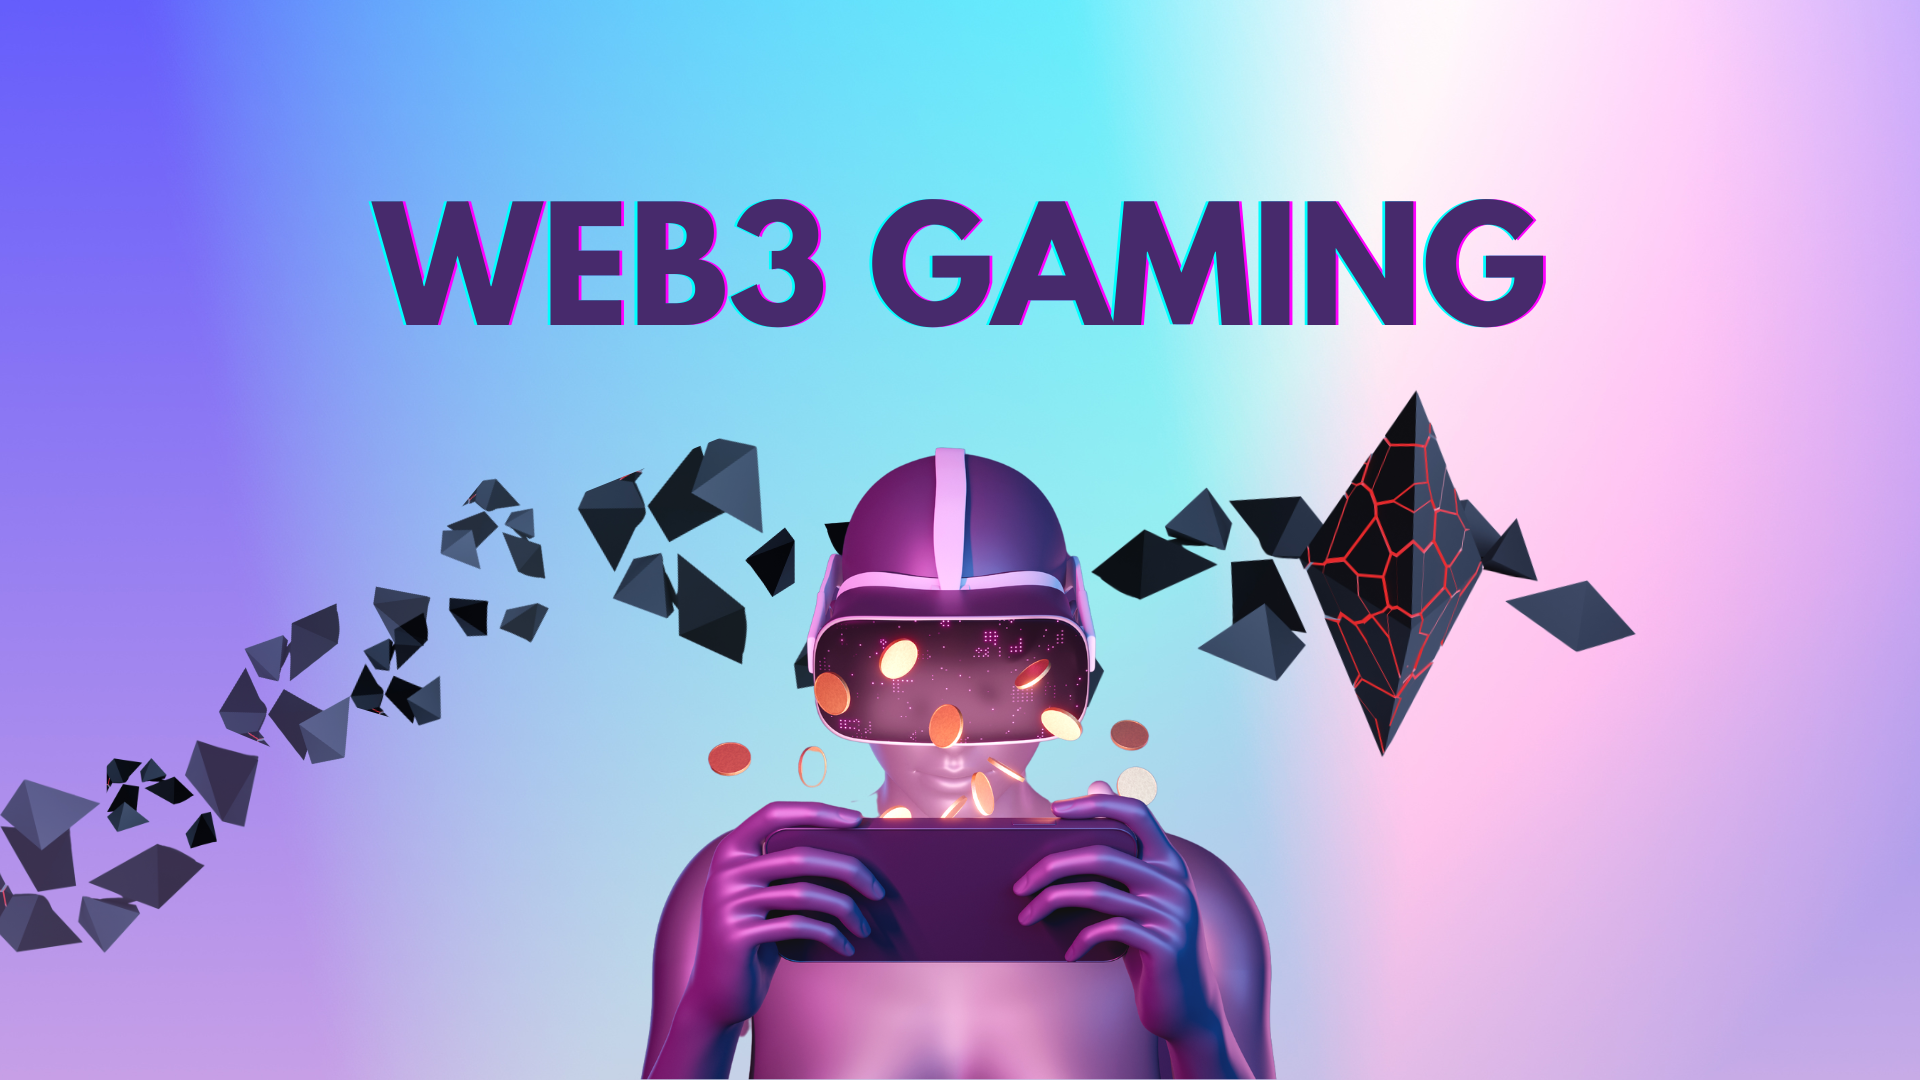 Web3 Gaming 1 саяд хүрсэн Daily Идэвхтэй түрийвч